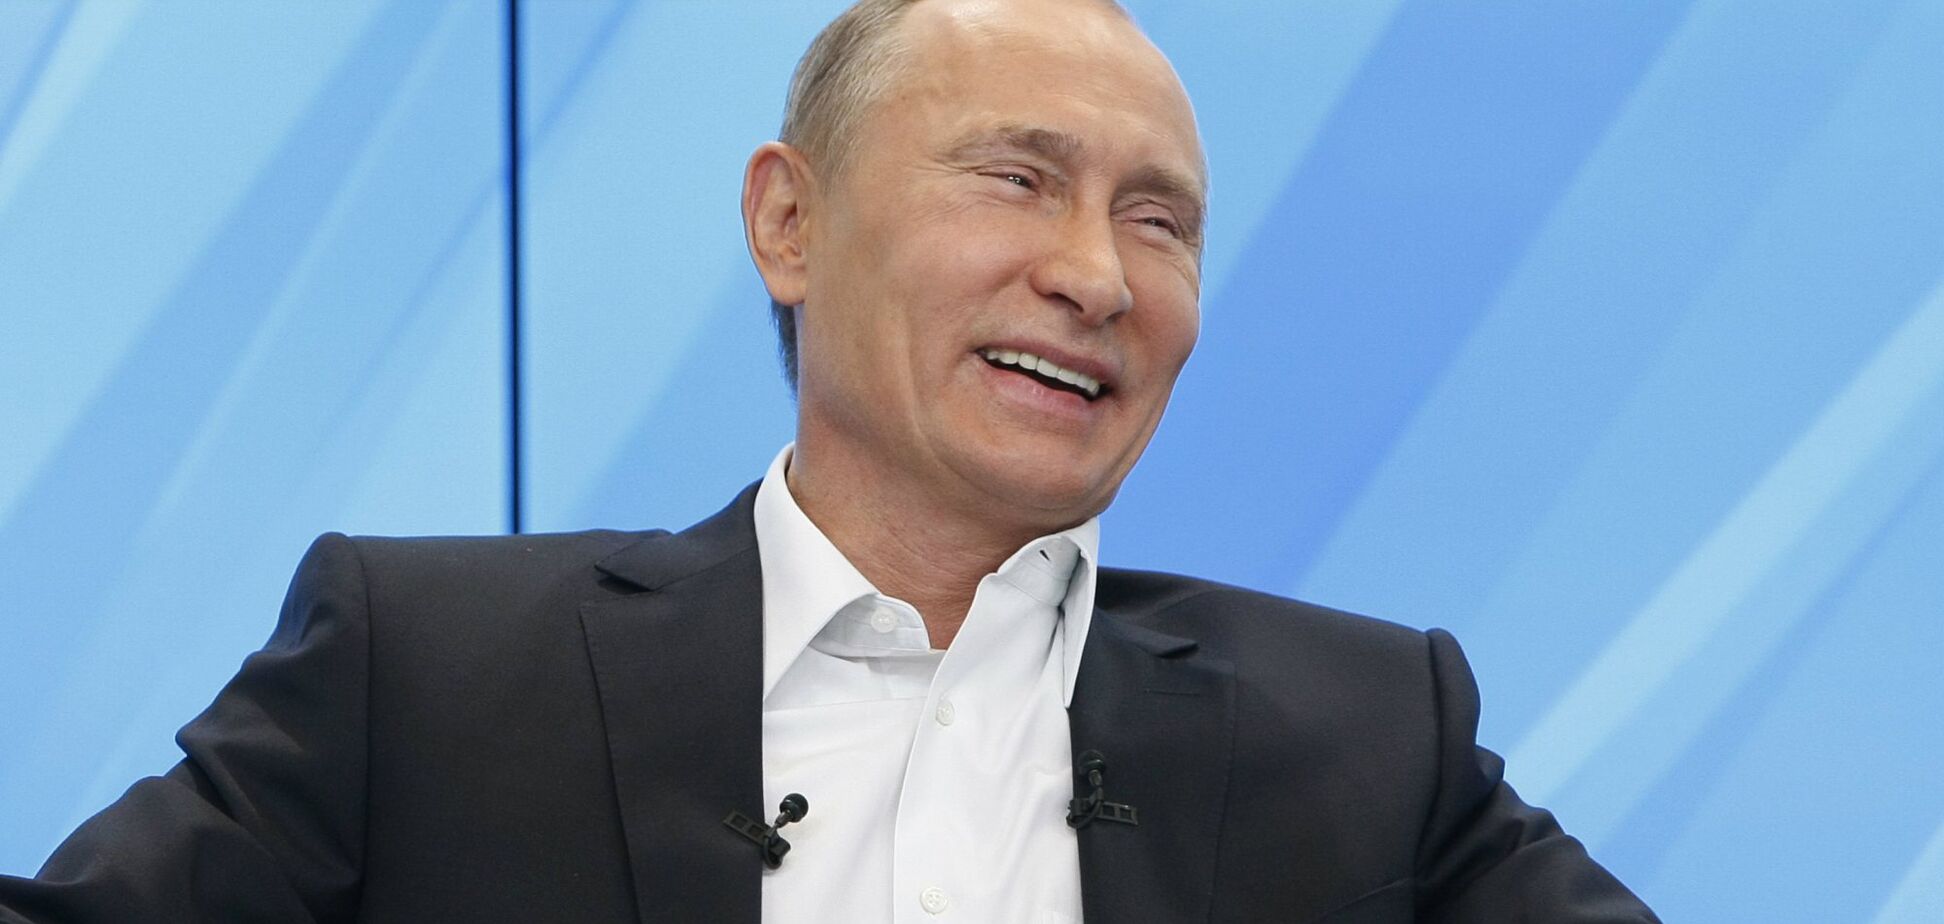 Найдена связь между отравлением Скрипаля и новой ракетой Путина